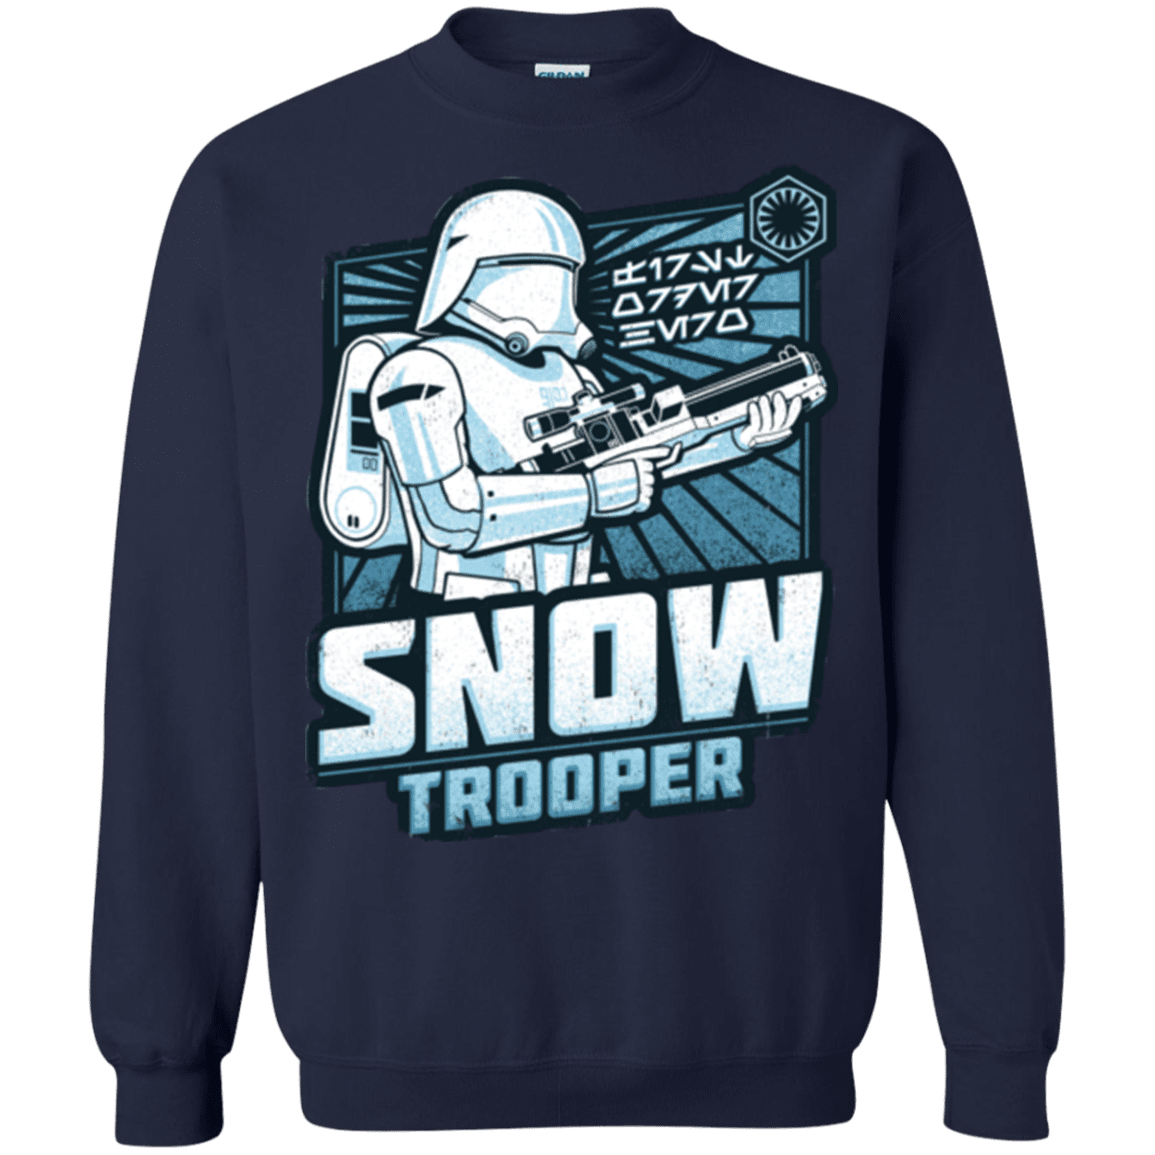 Sweatshirts Navy / S Snowtrooper Crewneck Sweatshirt